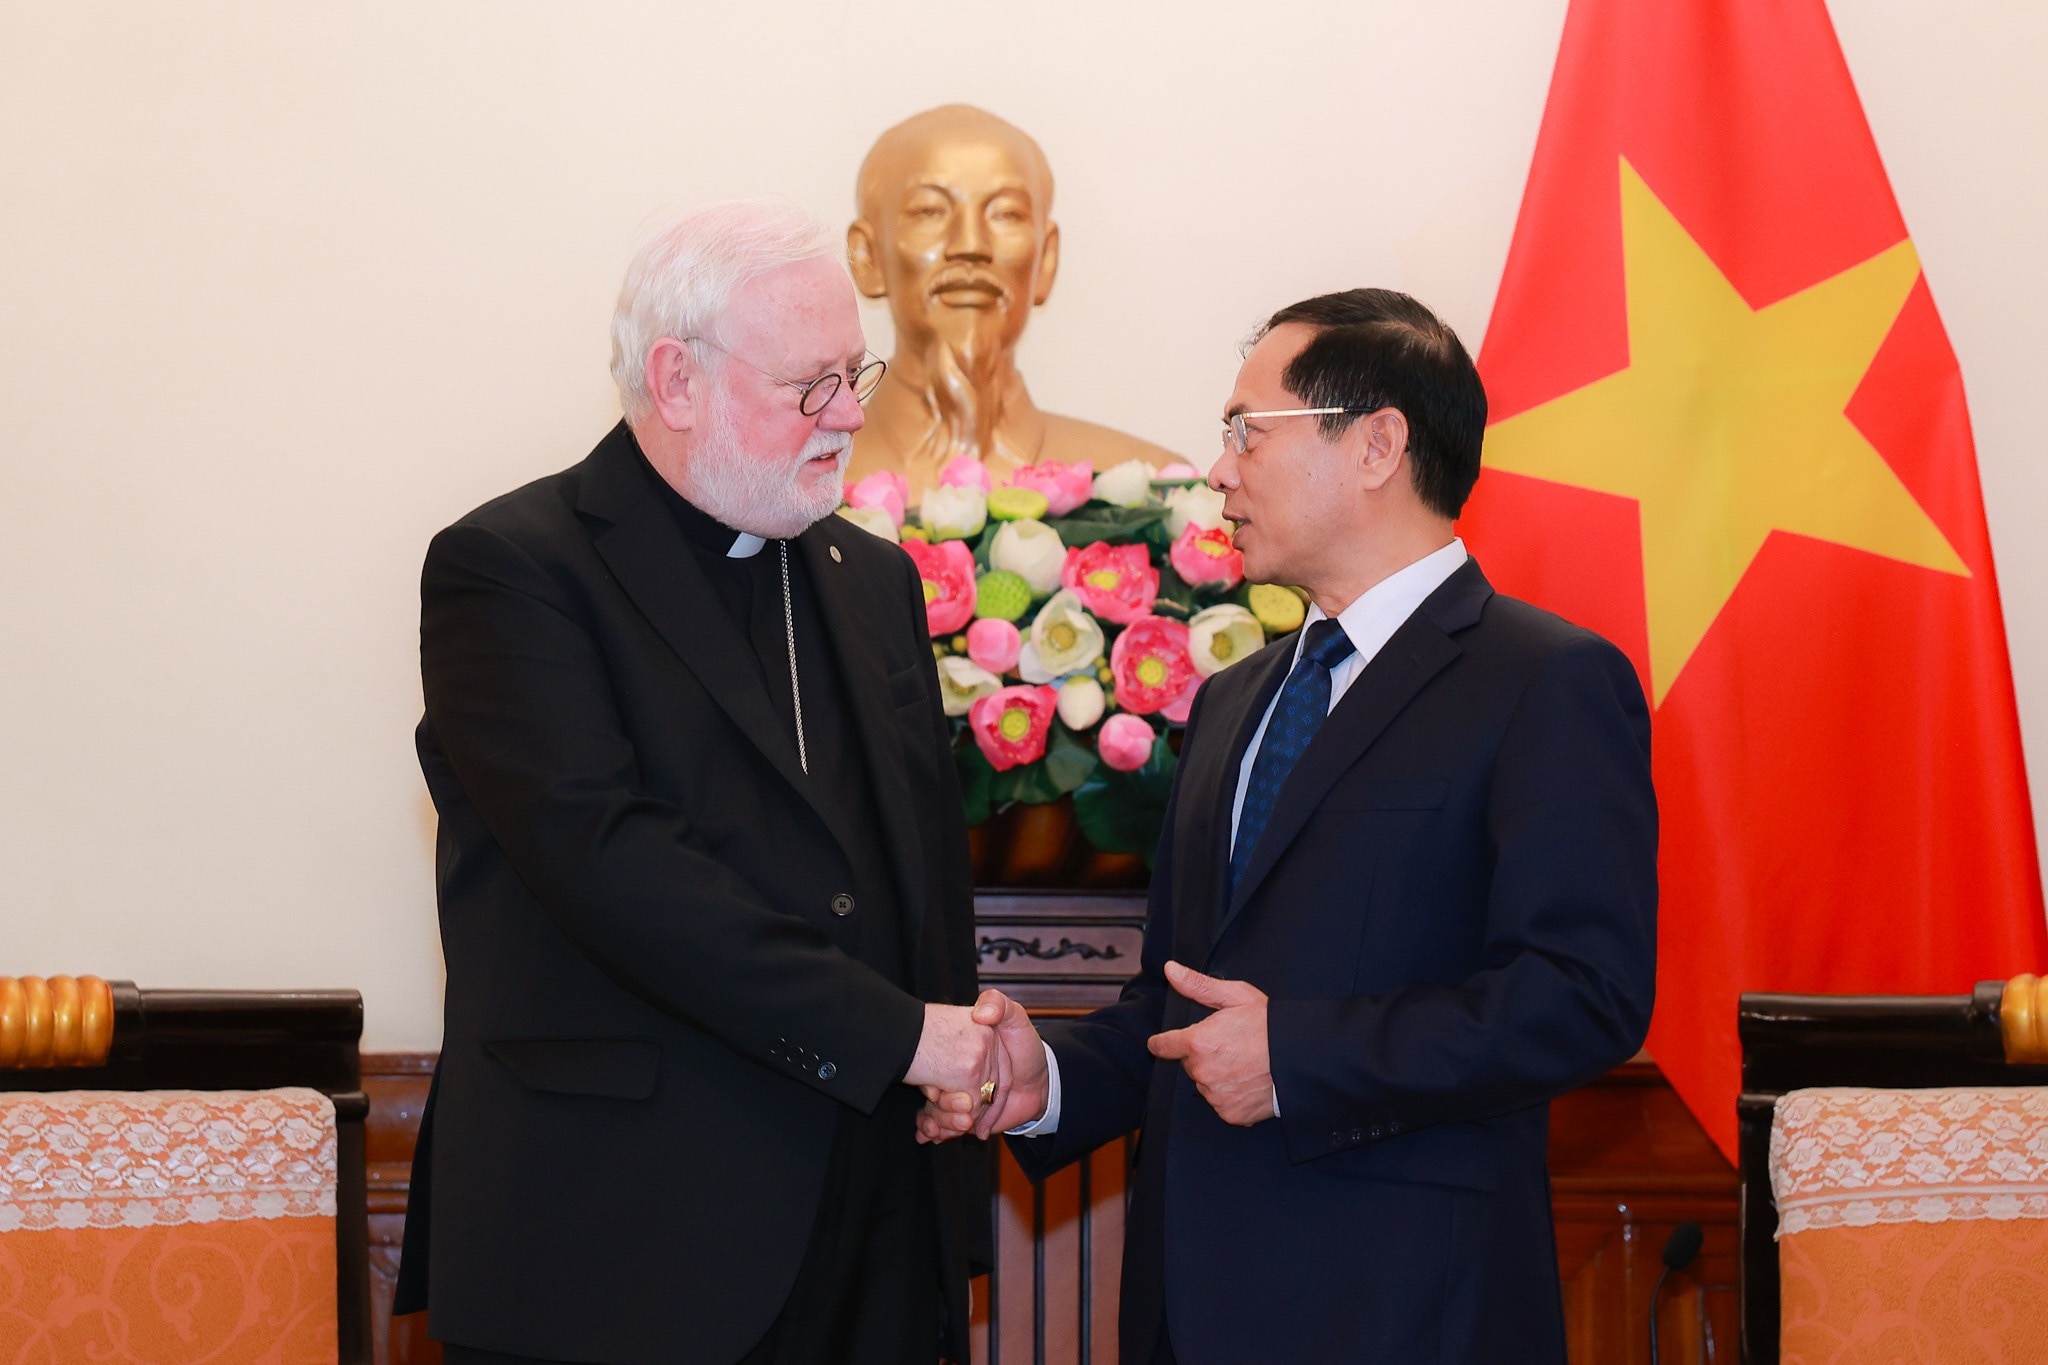 부이 탄 손(Bui Thanh Son) 장관은 이번 방문이 베트남과 바티칸 사이의 좋은 관계를 증진하는 데 기여할 것이라고 믿습니다. 사진: 하이 응우옌